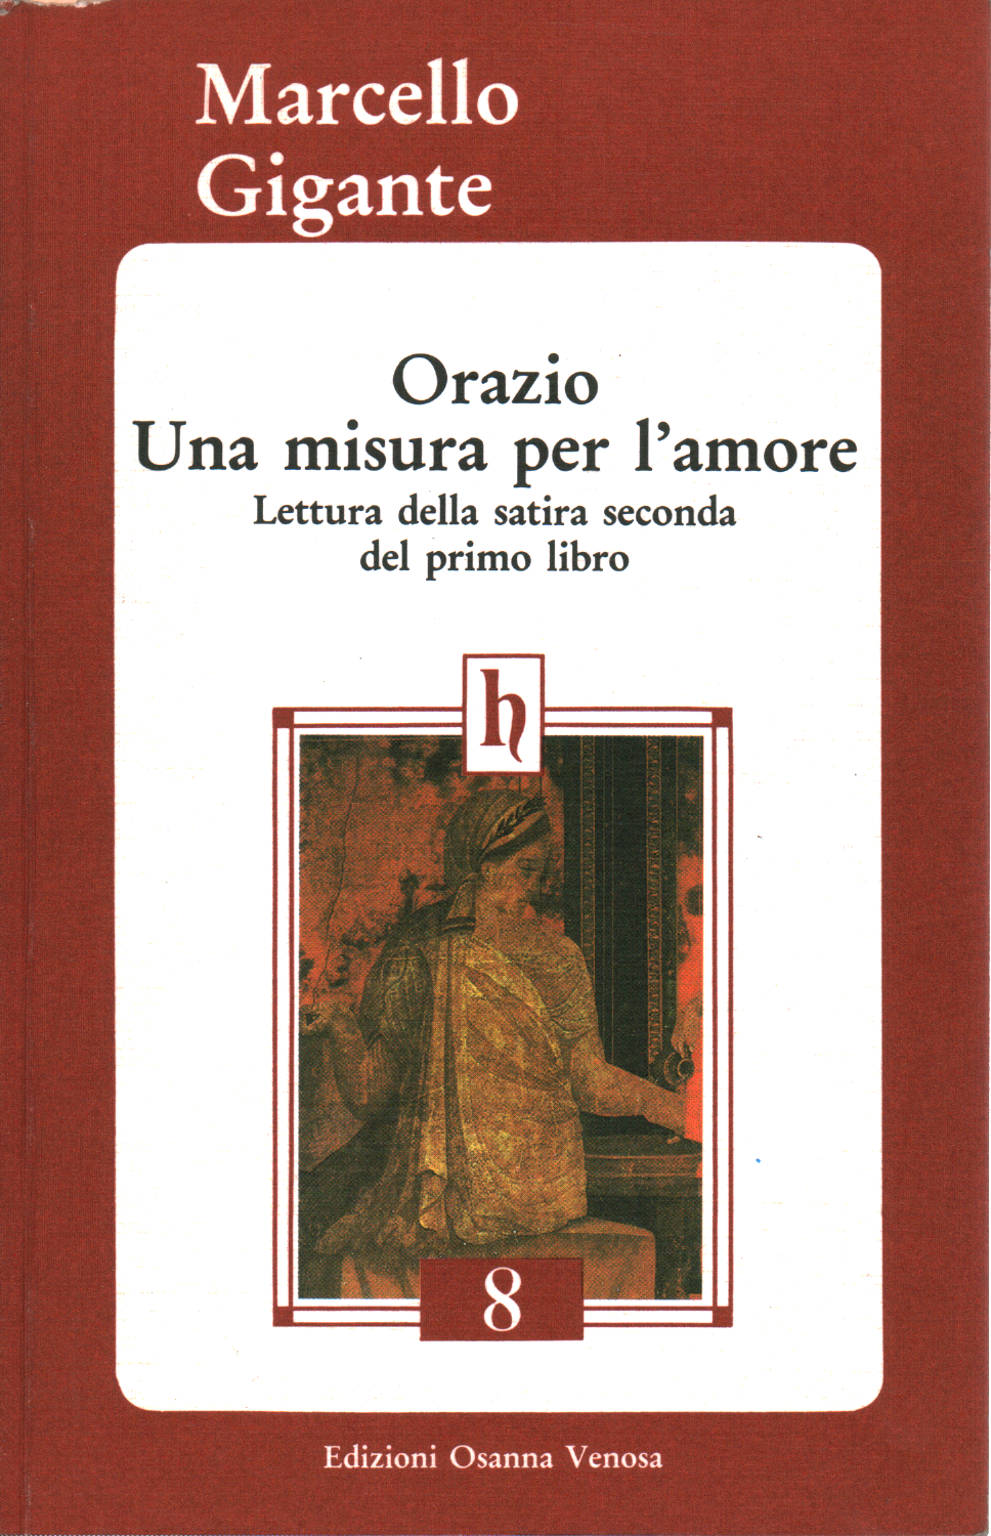 Marcello Gigante, usato, Orazio Una misura per l'amore, Lettura della  satira seconda del primo libro, Libreria, Saggi di letteratura